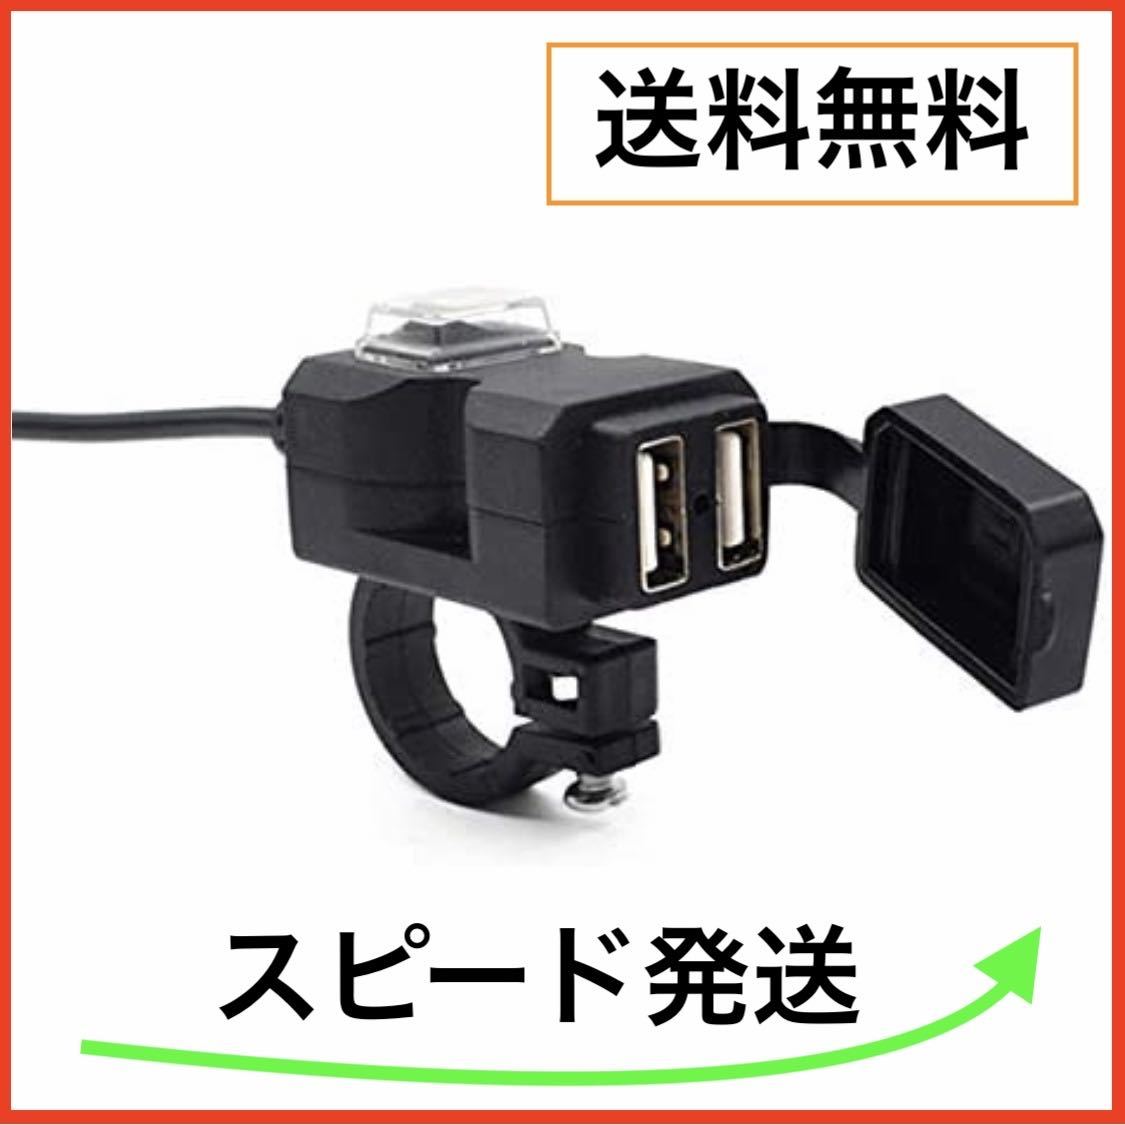 バイク USB電源 充電器 3.1A USB 2ポート 防水 スマホ 充電 便利 / ウーバーイーツ 配達員の方に_画像1